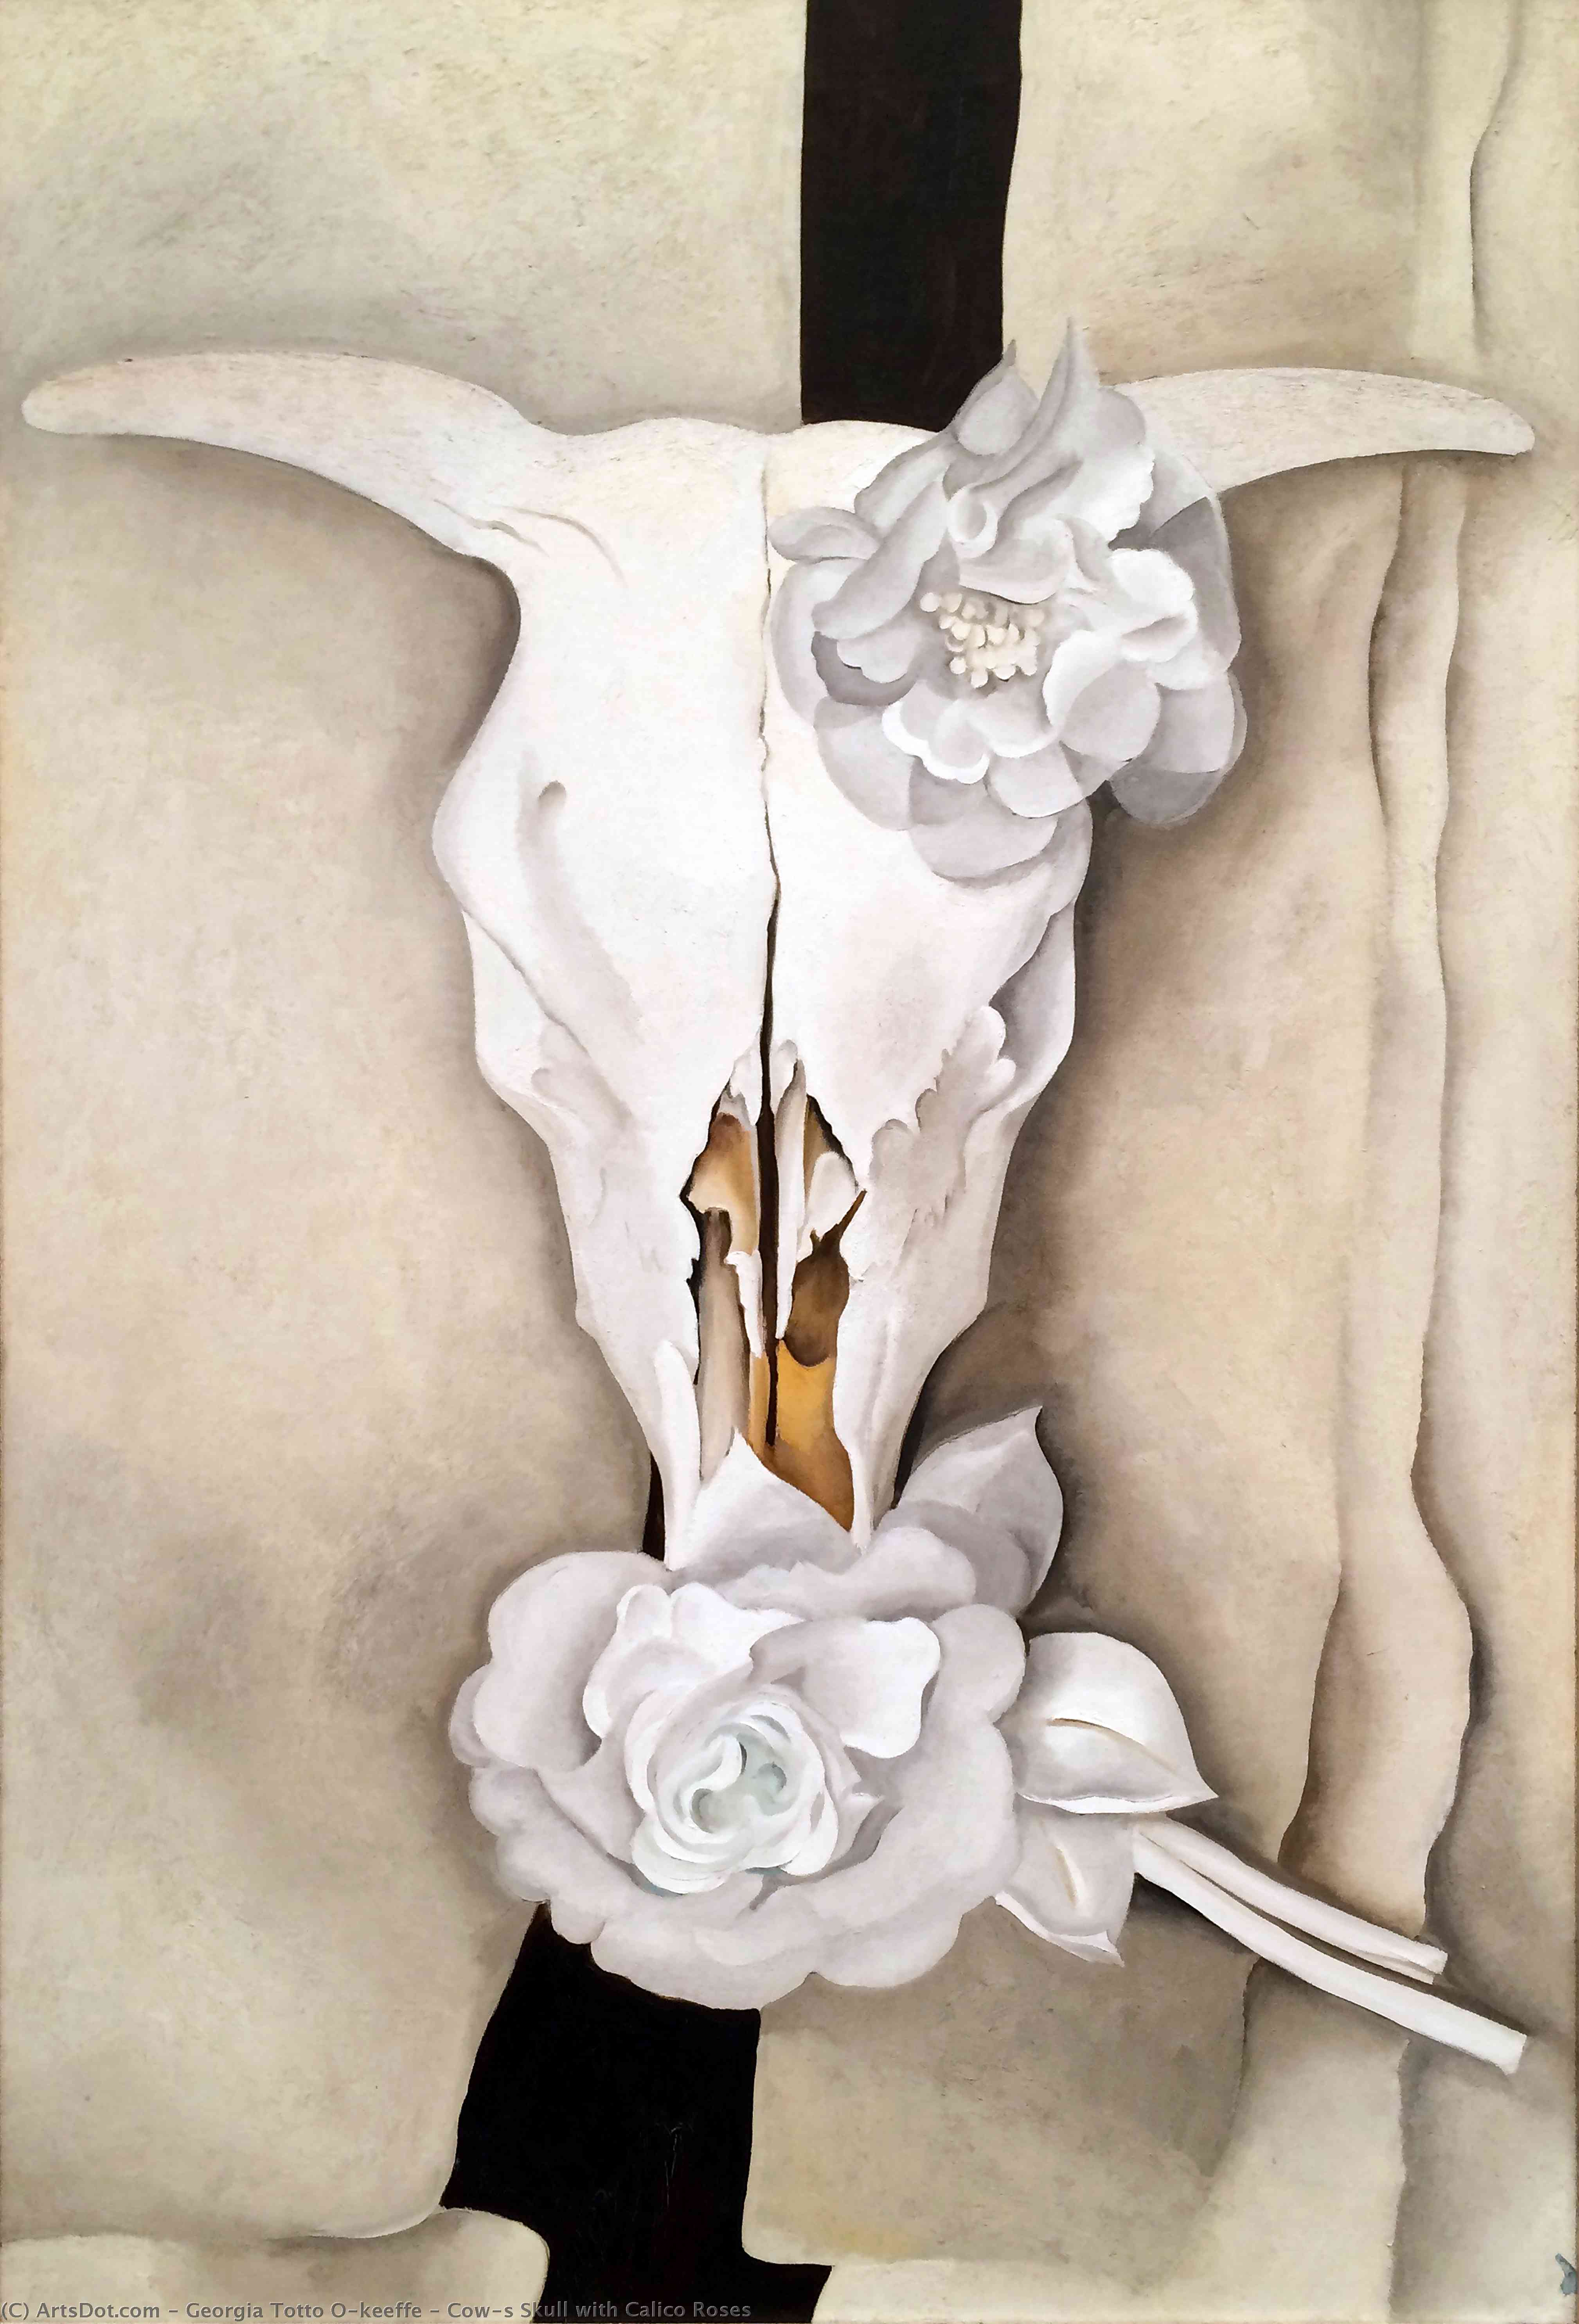 WikiOO.org - Enciklopedija likovnih umjetnosti - Slikarstvo, umjetnička djela Georgia Totto O'keeffe - Cow's Skull with Calico Roses